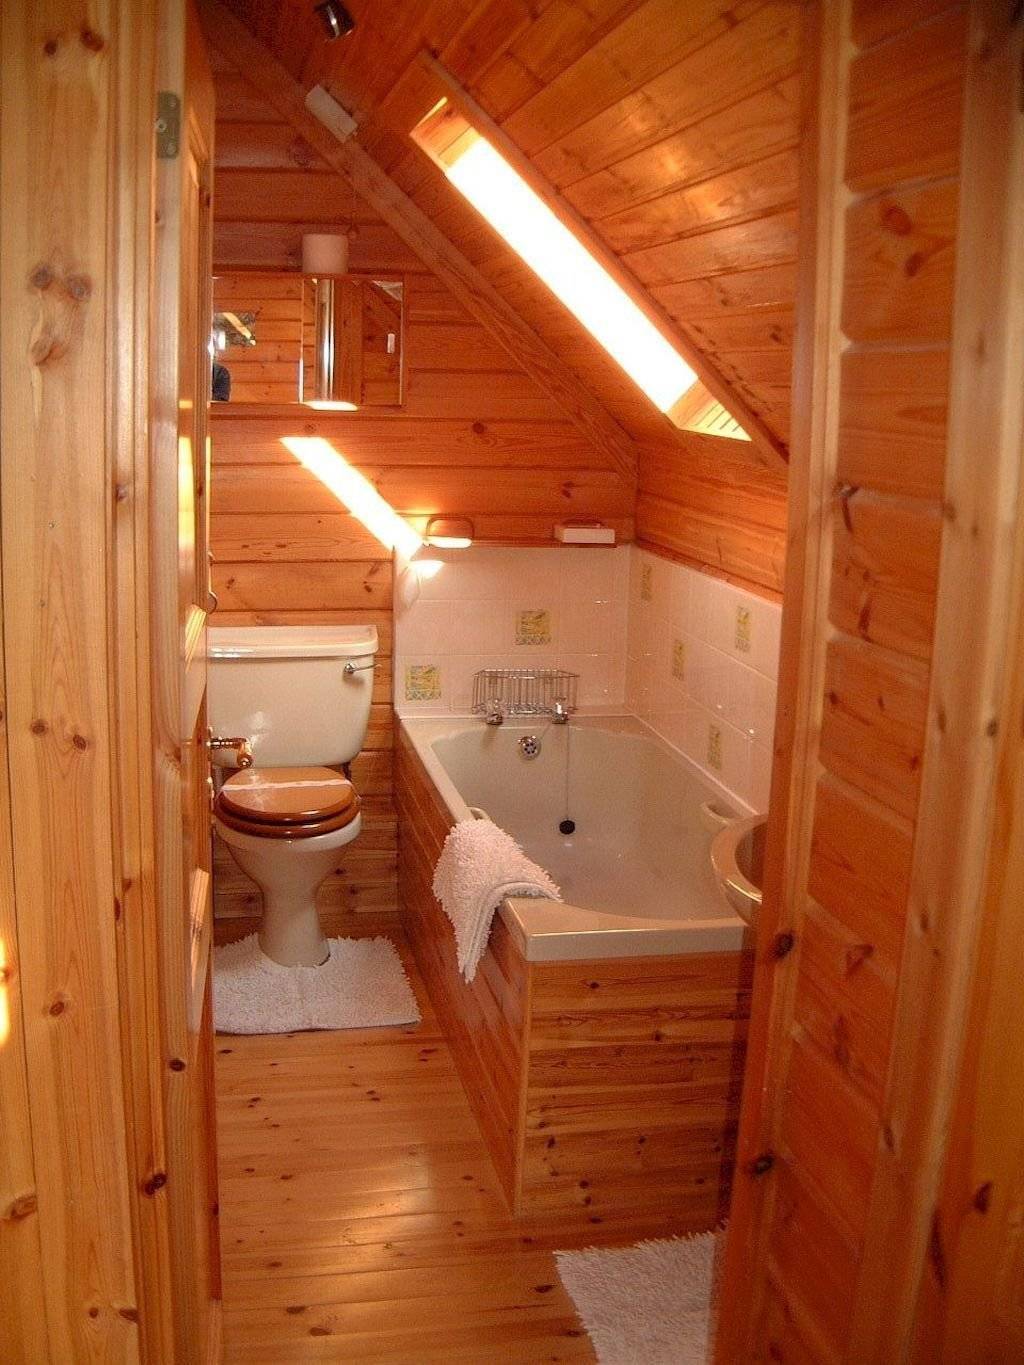 Ванная комната в деревянном доме: отделка, материалы и технологии